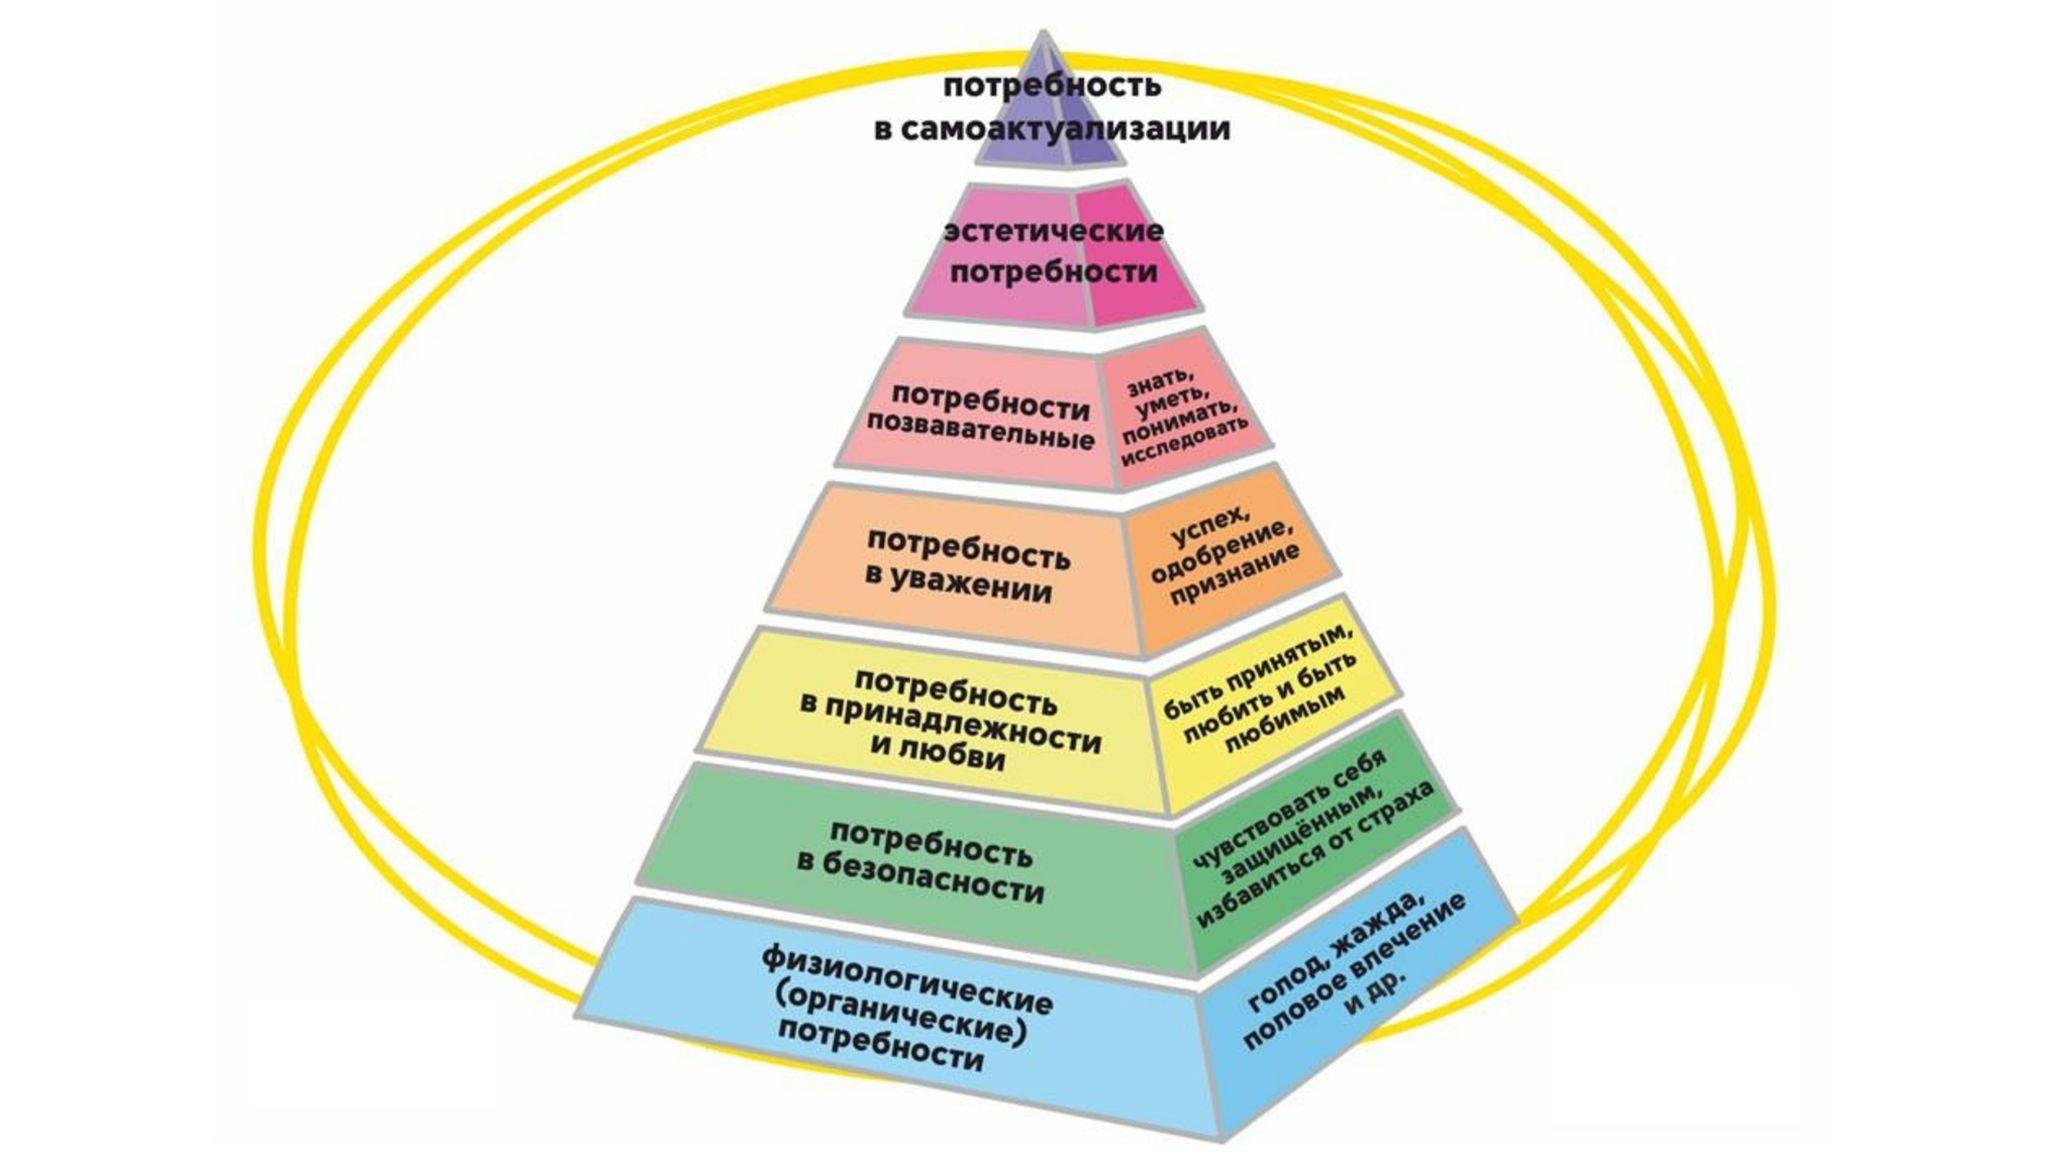 Средства необходимые для удовлетворения потребностей. Семь уровней пирамиды Маслоу. Пирамида развития личности Маслоу. Базовые потребности человека по пирамиде Маслоу. Пирамида Маслоу 7 уровней безопасности.